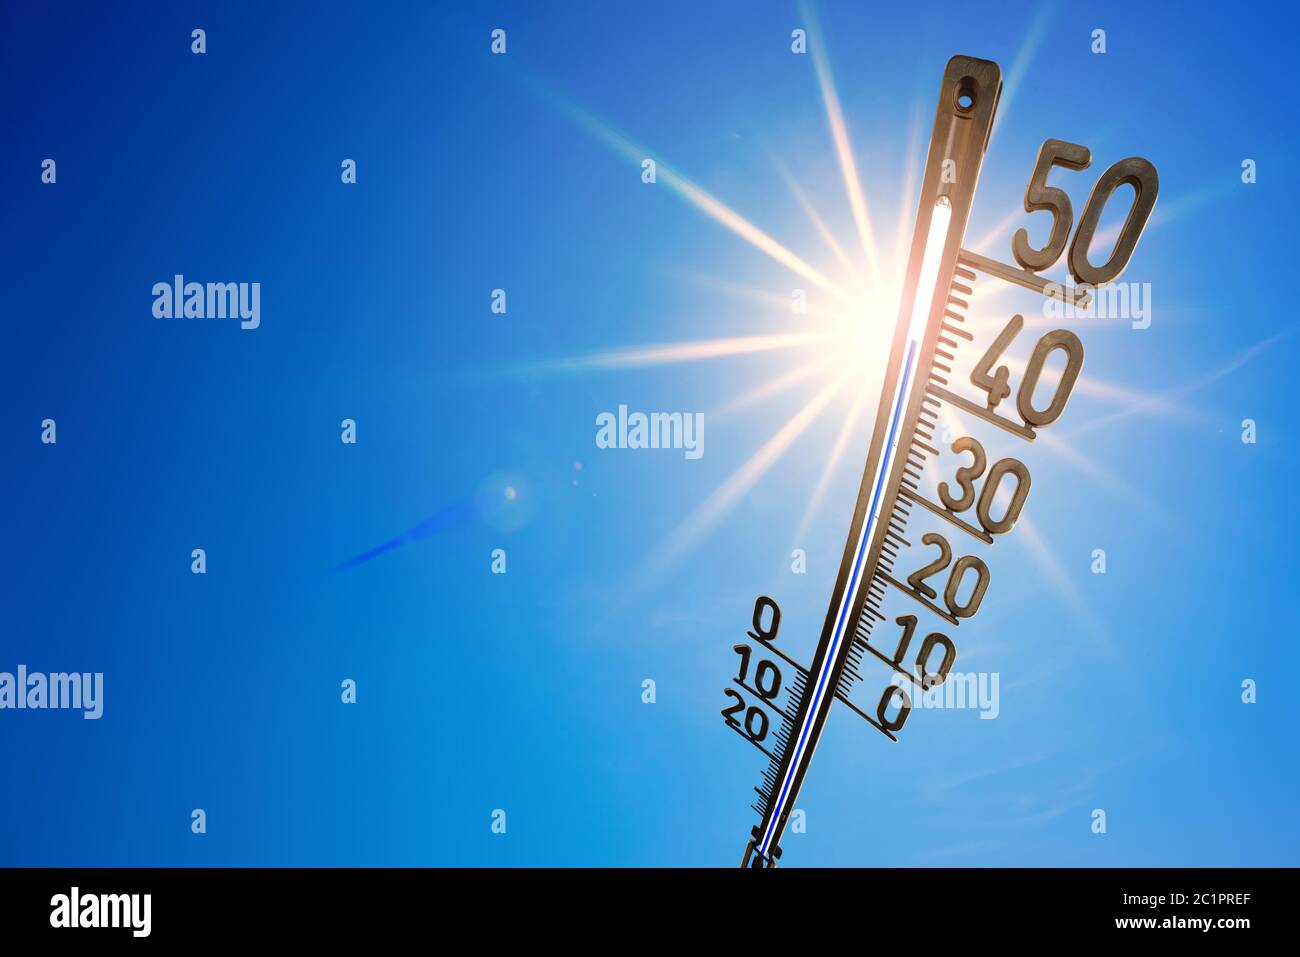 Verano caliente o fondo de ola de calor, sol brillante sobre cielo azul con termómetro Foto de stock